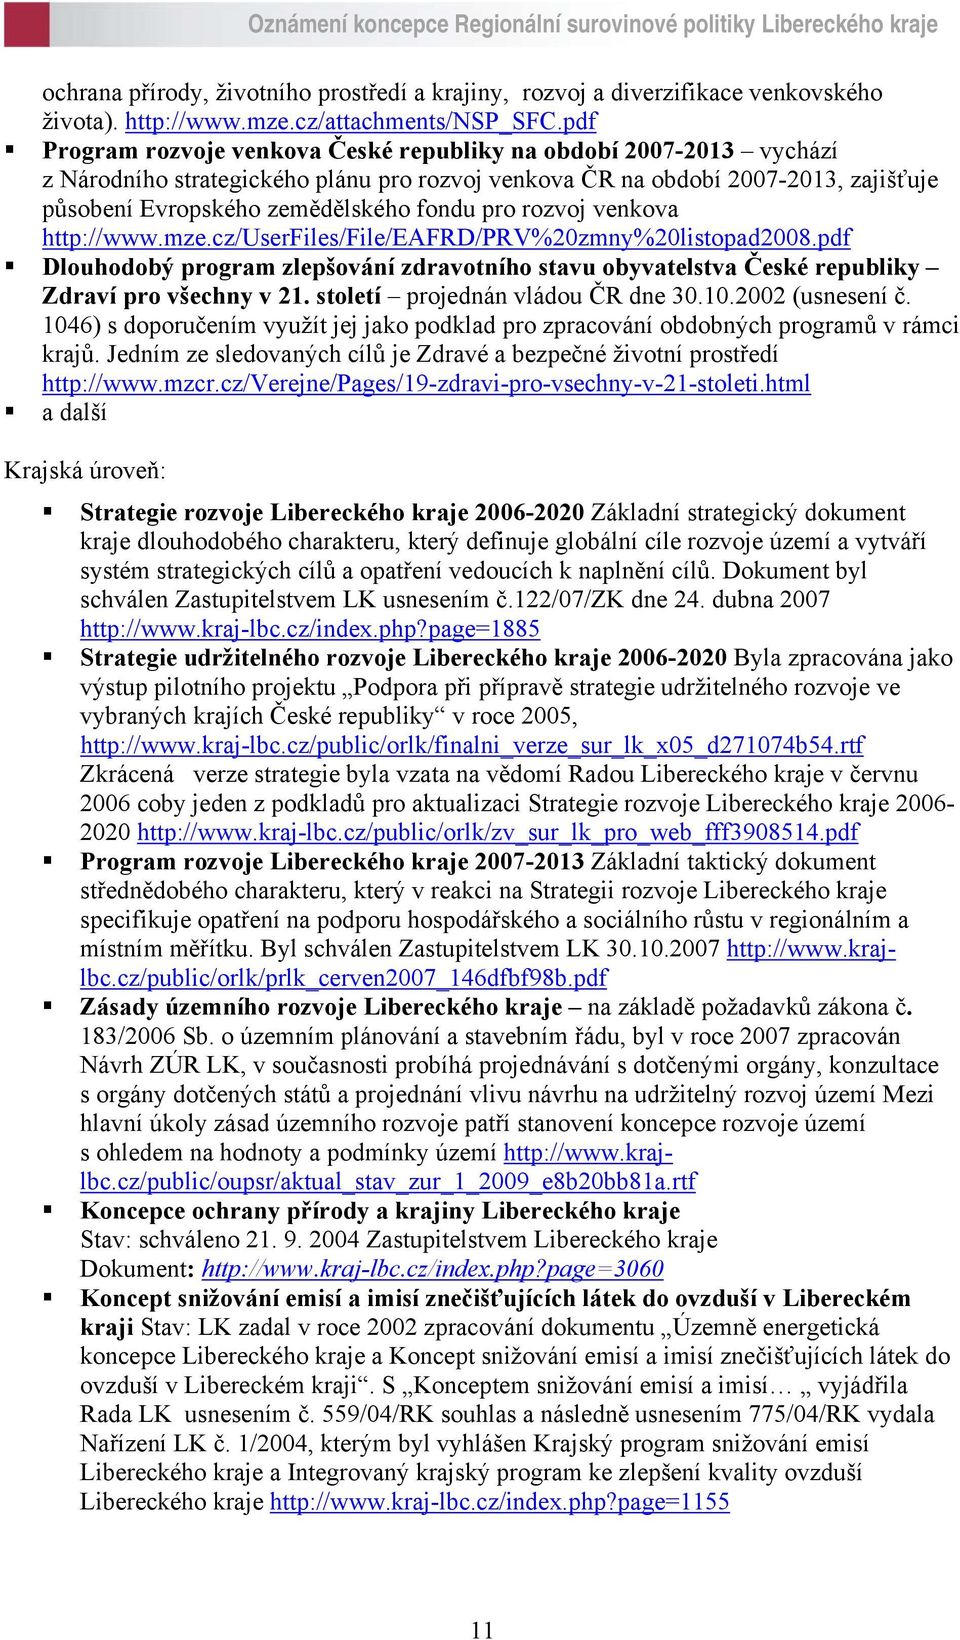 rozvoj venkova http://www.mze.cz/userfiles/file/eafrd/prv%20zmny%20listopad2008.pdf Dlouhodobý program zlepšování zdravotního stavu obyvatelstva České republiky Zdraví pro všechny v 21.